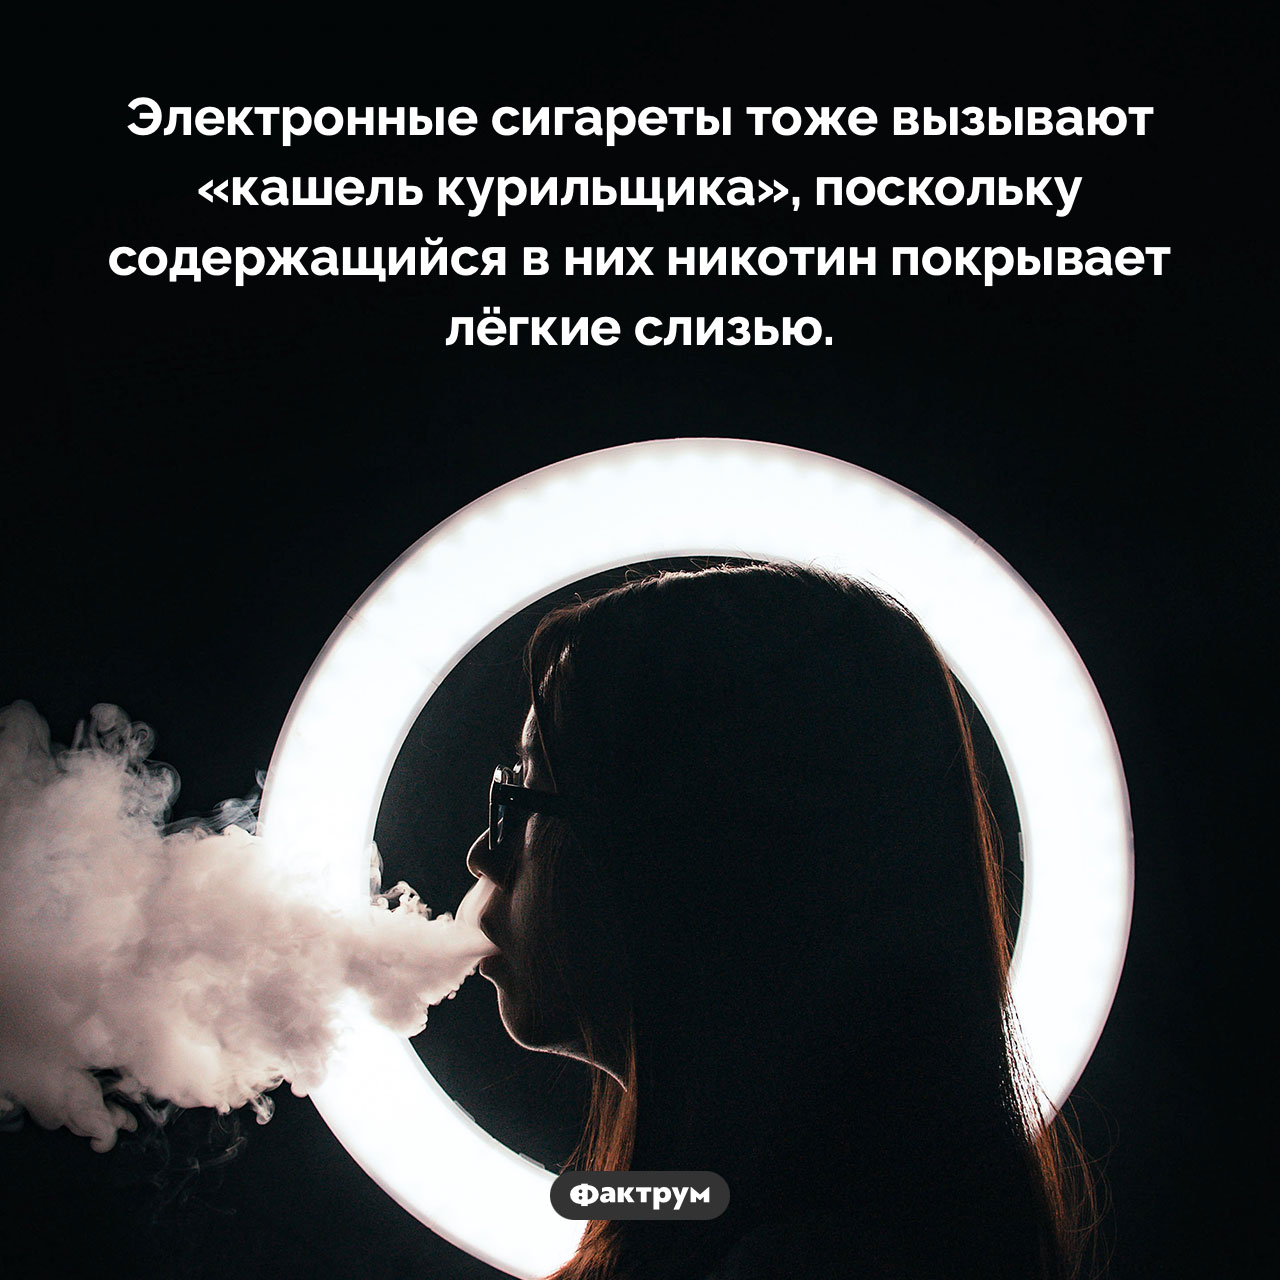 «Кашель курильщика» от электронных сигарет